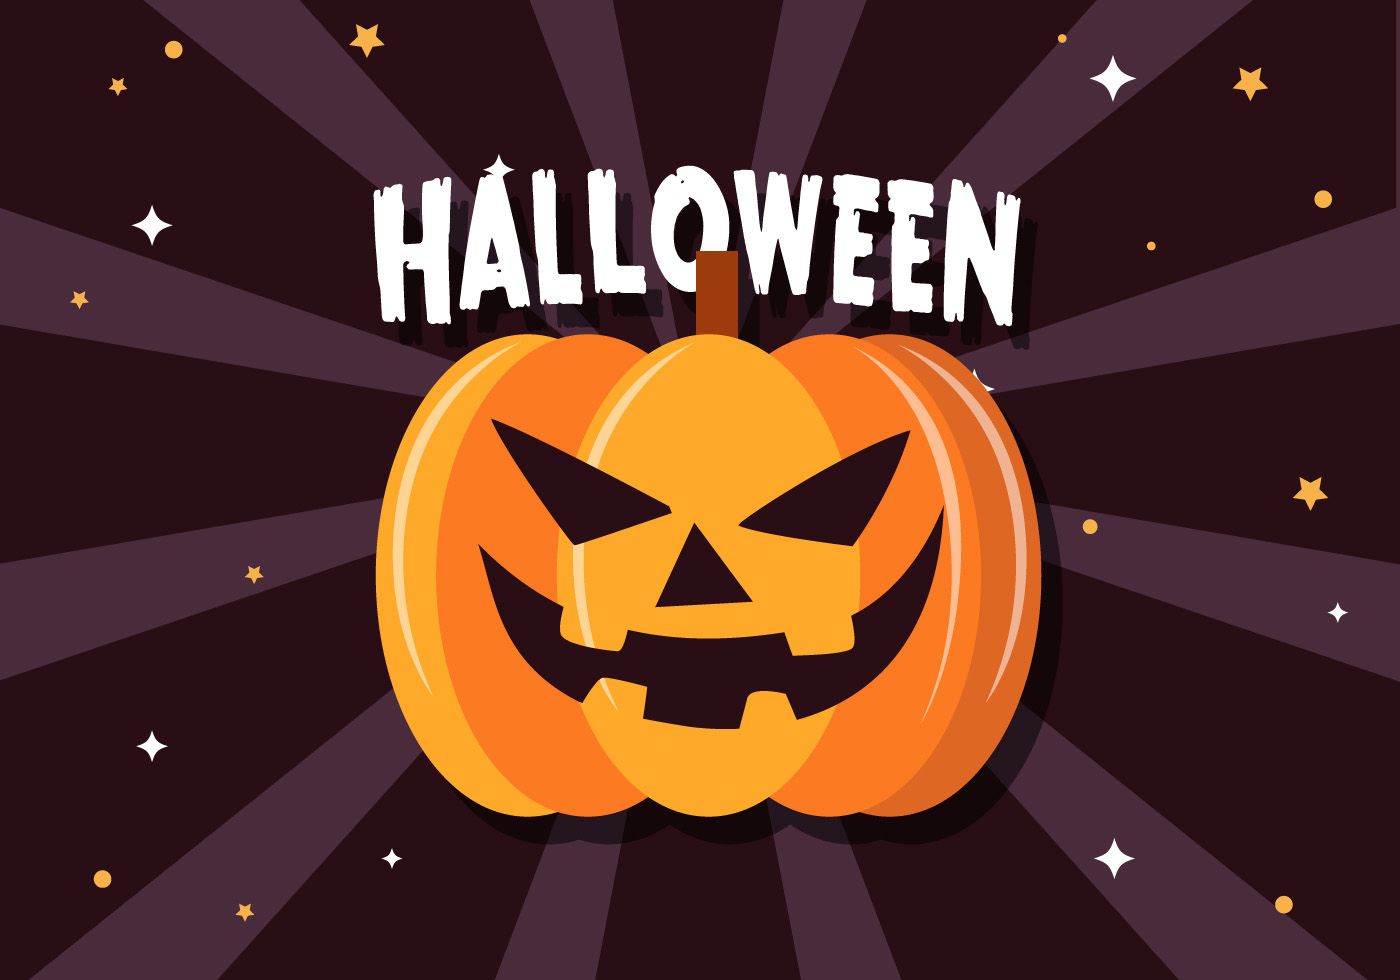 Download Scary Halloween Pumpkin Vector - Download Free Vector Art ...